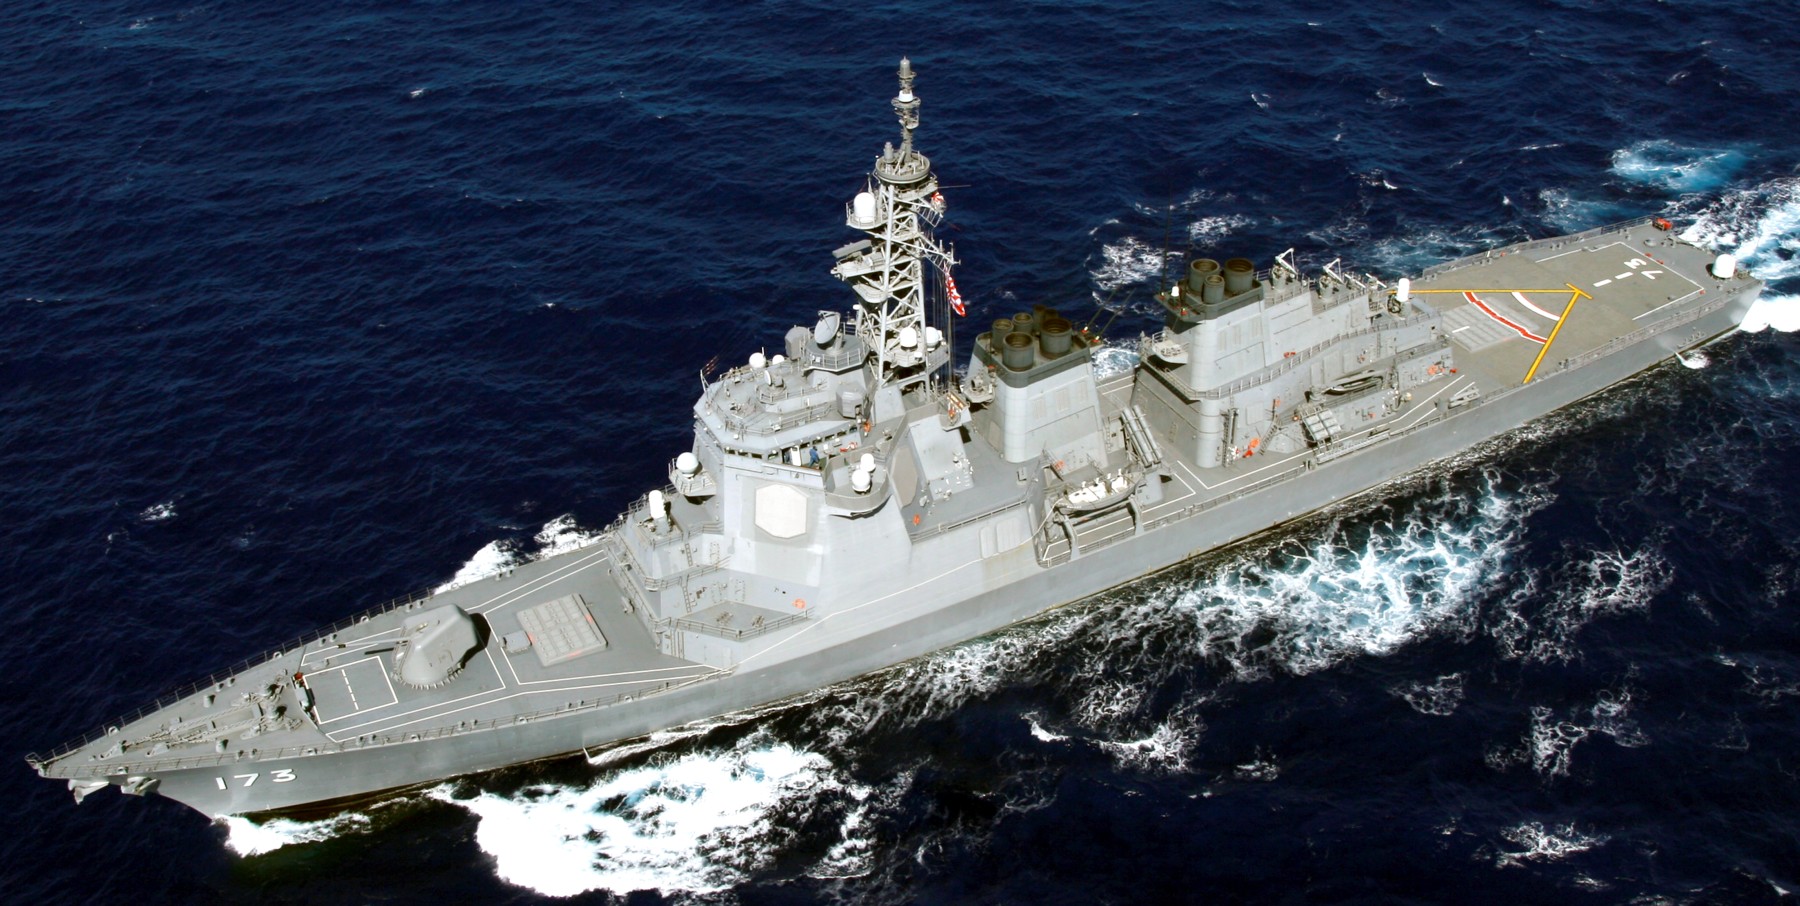 ddg-173 jds kongou guided missile destroyer japan maritime self defense force jmsdf 18